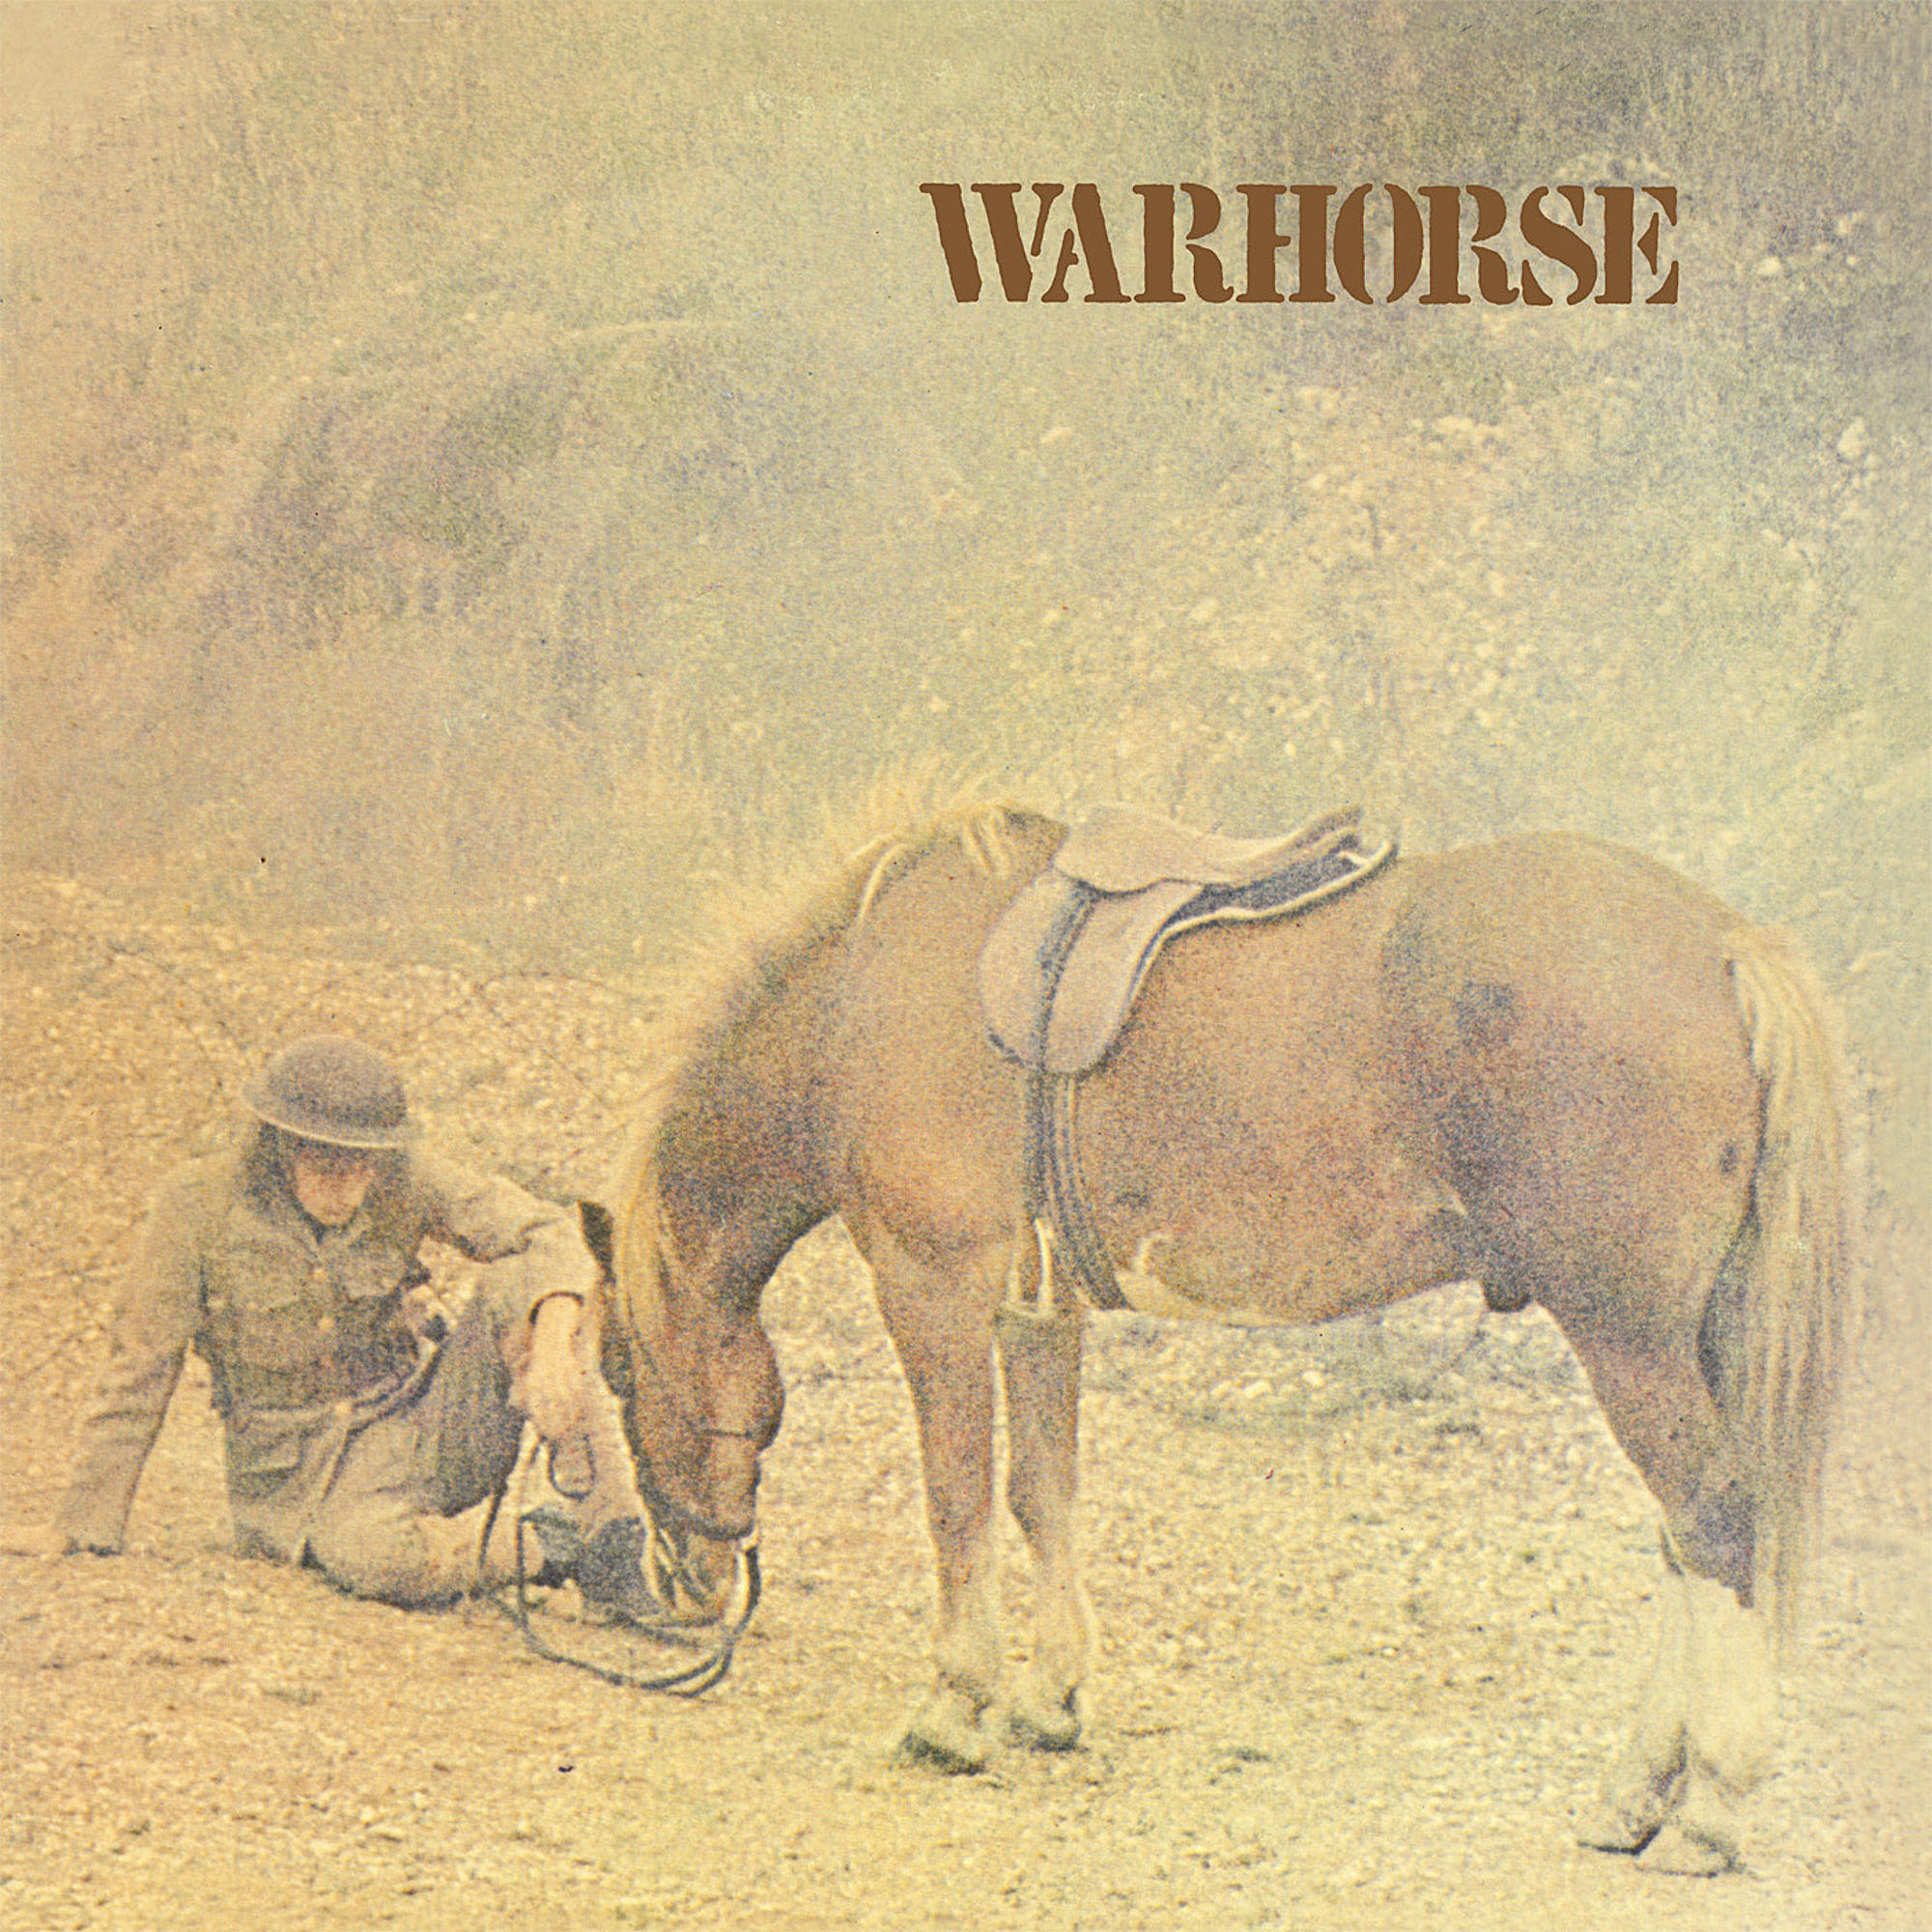 Warhorse - WARHORSE - (Vinyl)